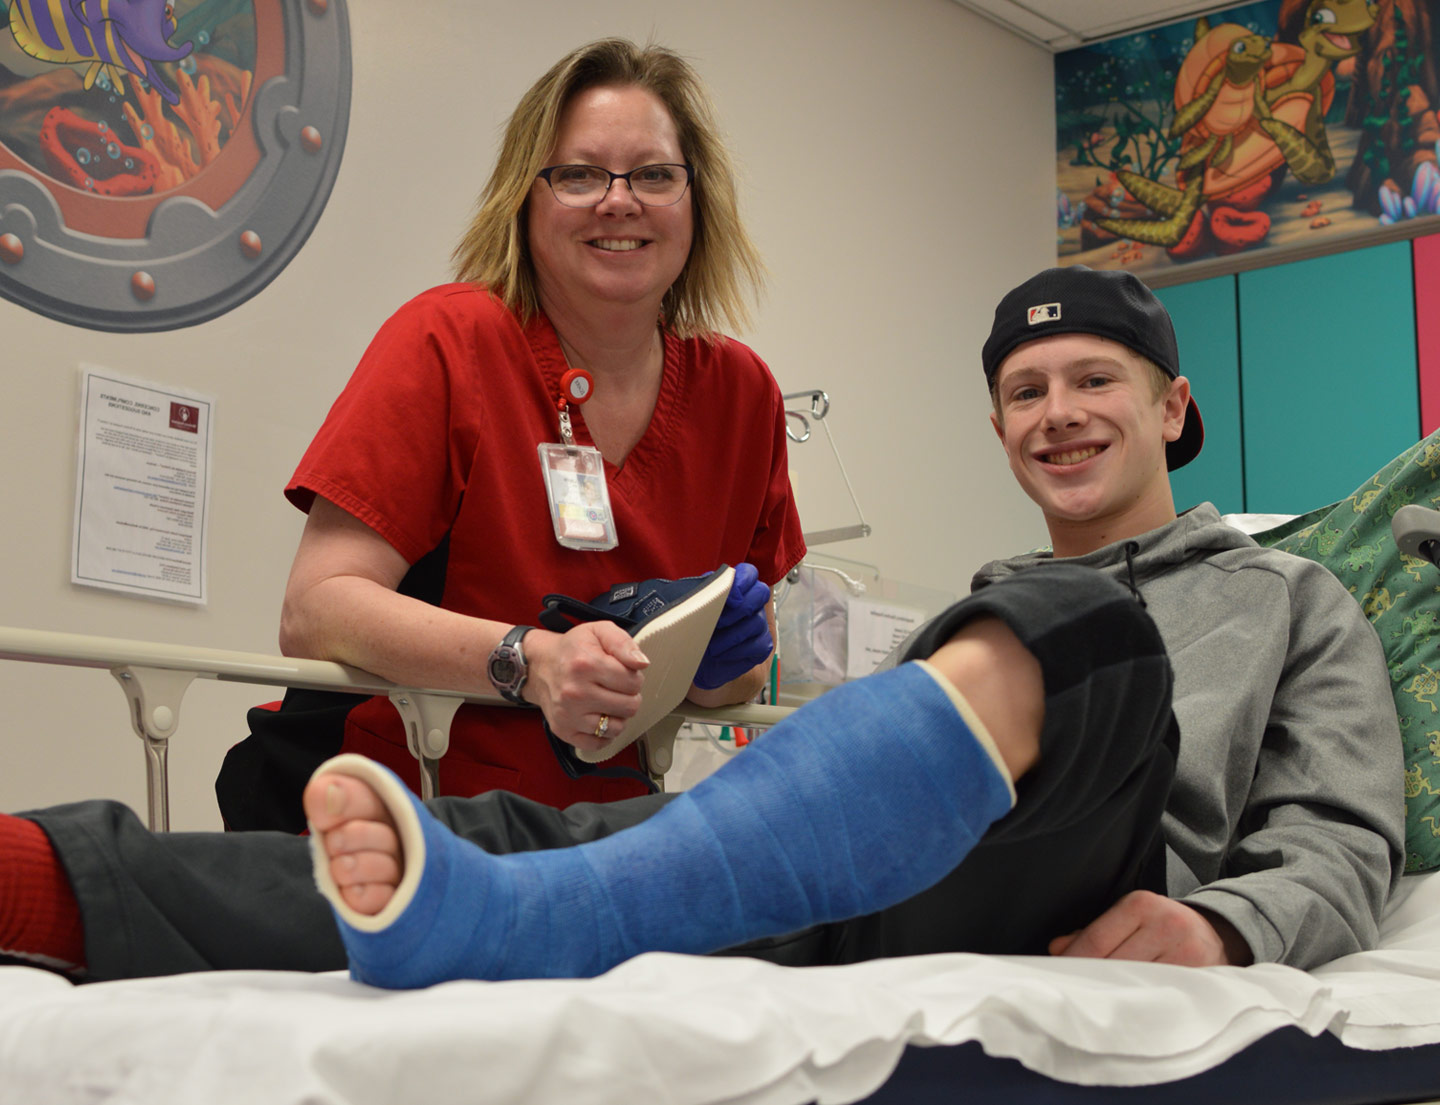 fracture patient in leg cast with nurse